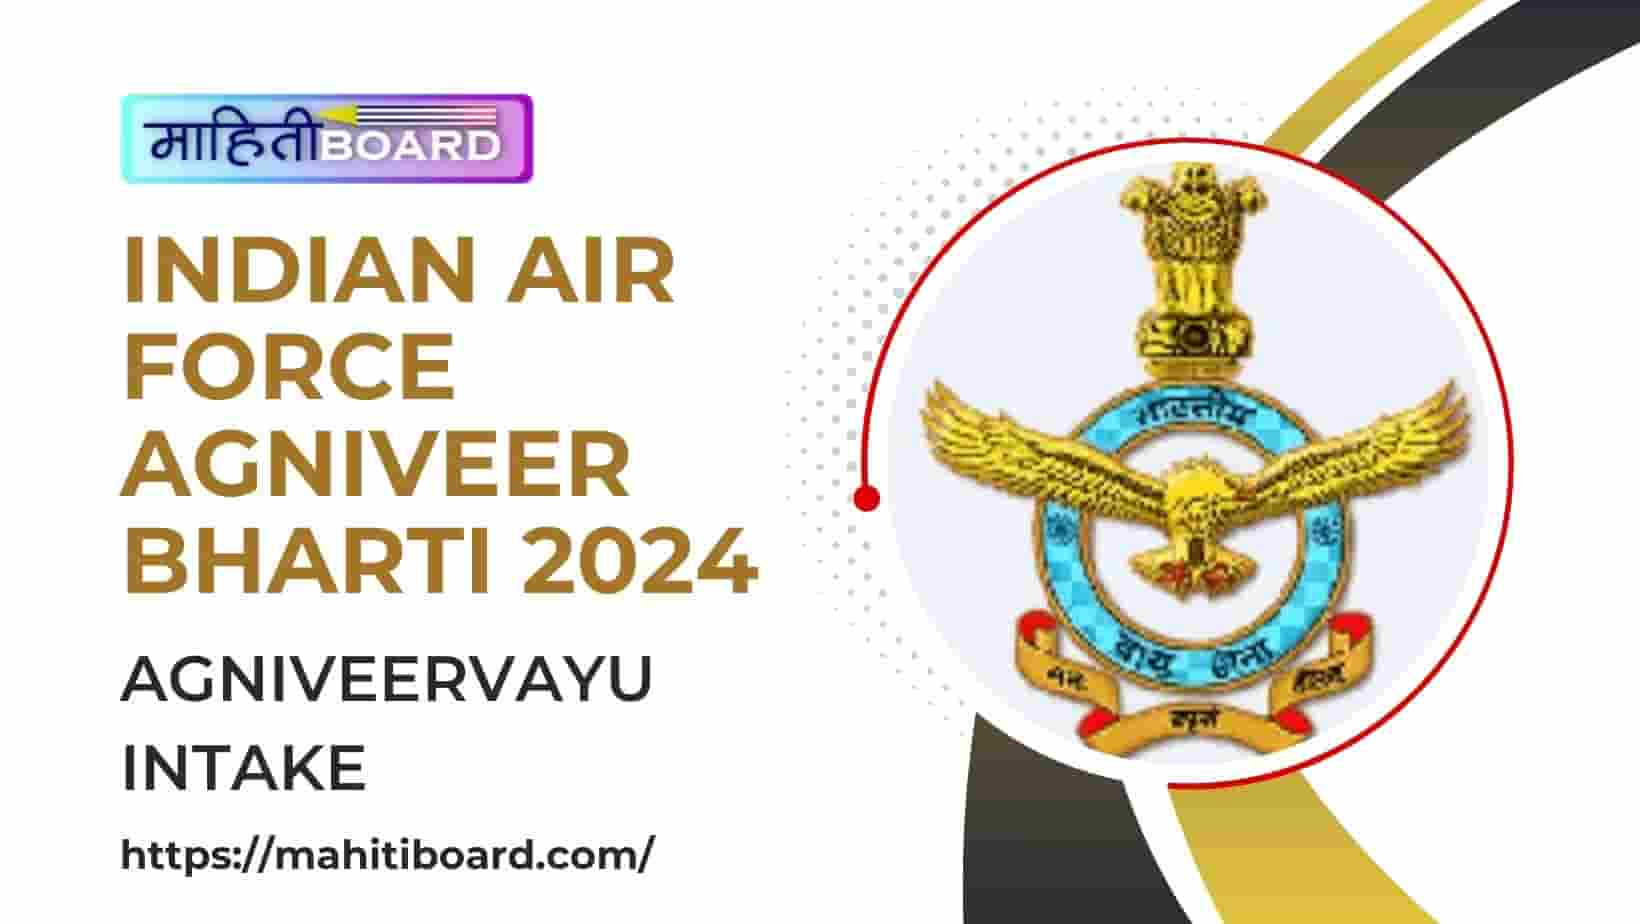 Indian Air Force Agniveer Bharti 2024